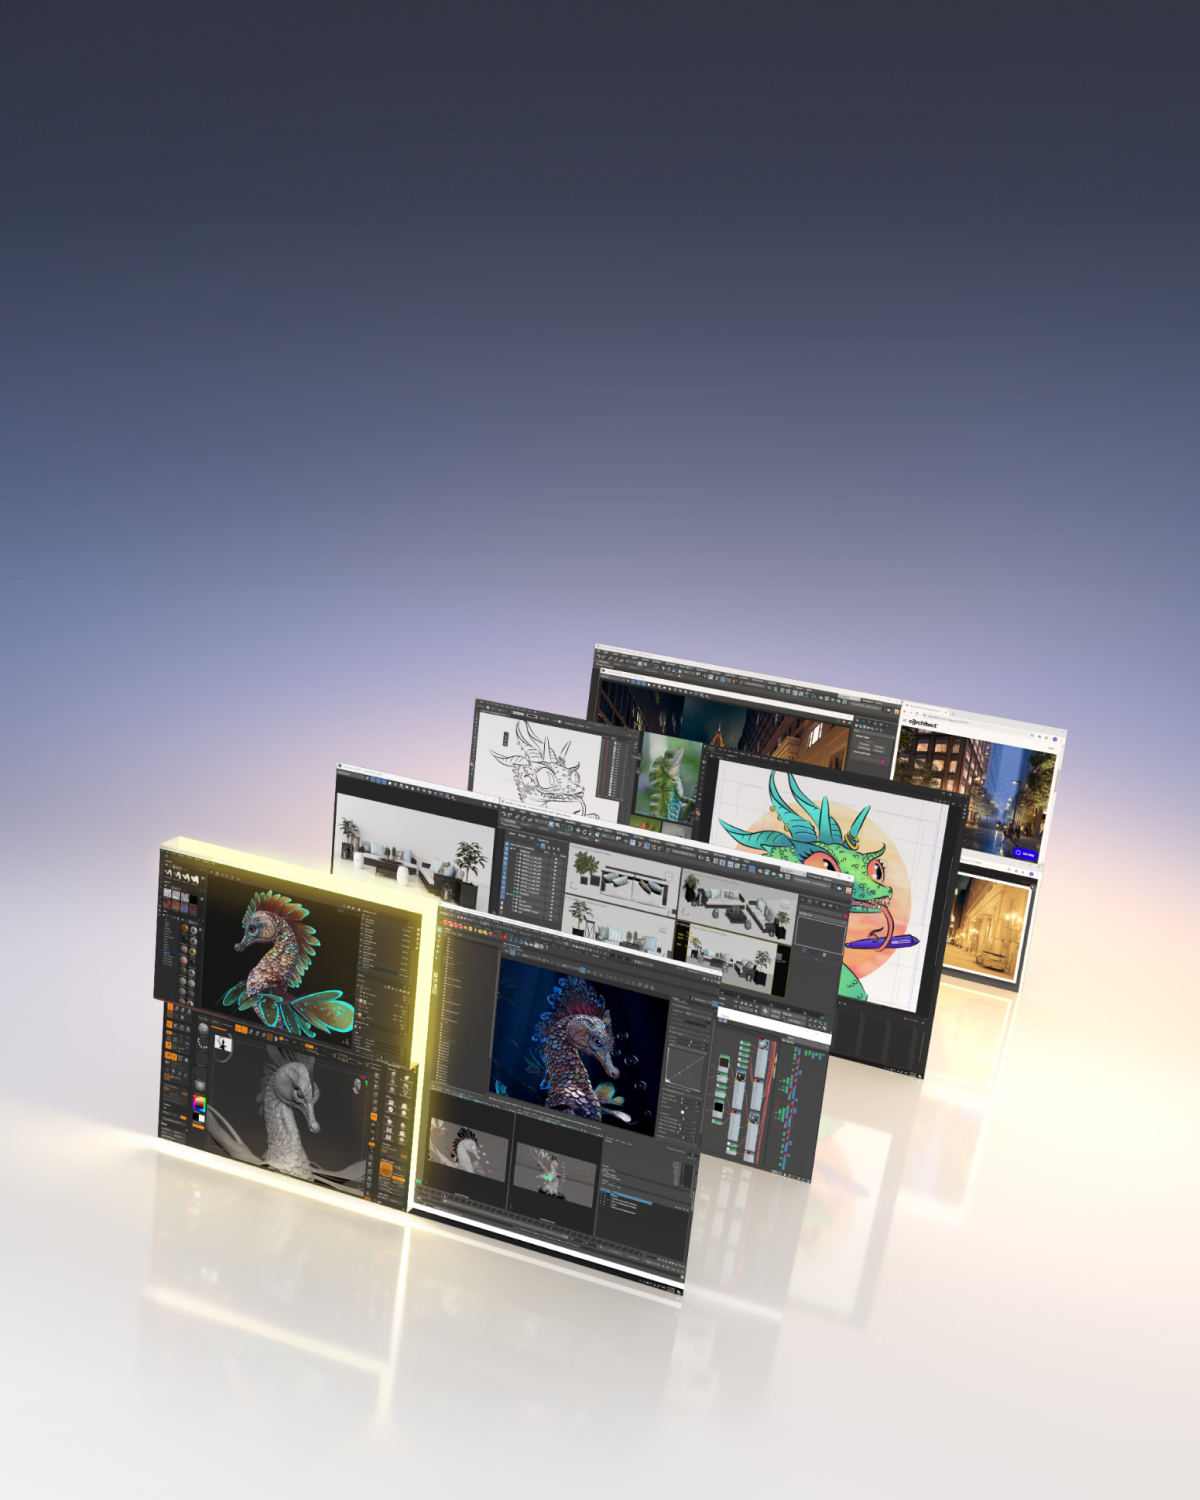 计算机屏幕显示多张图像，展示 RTX 2000 的强大功能